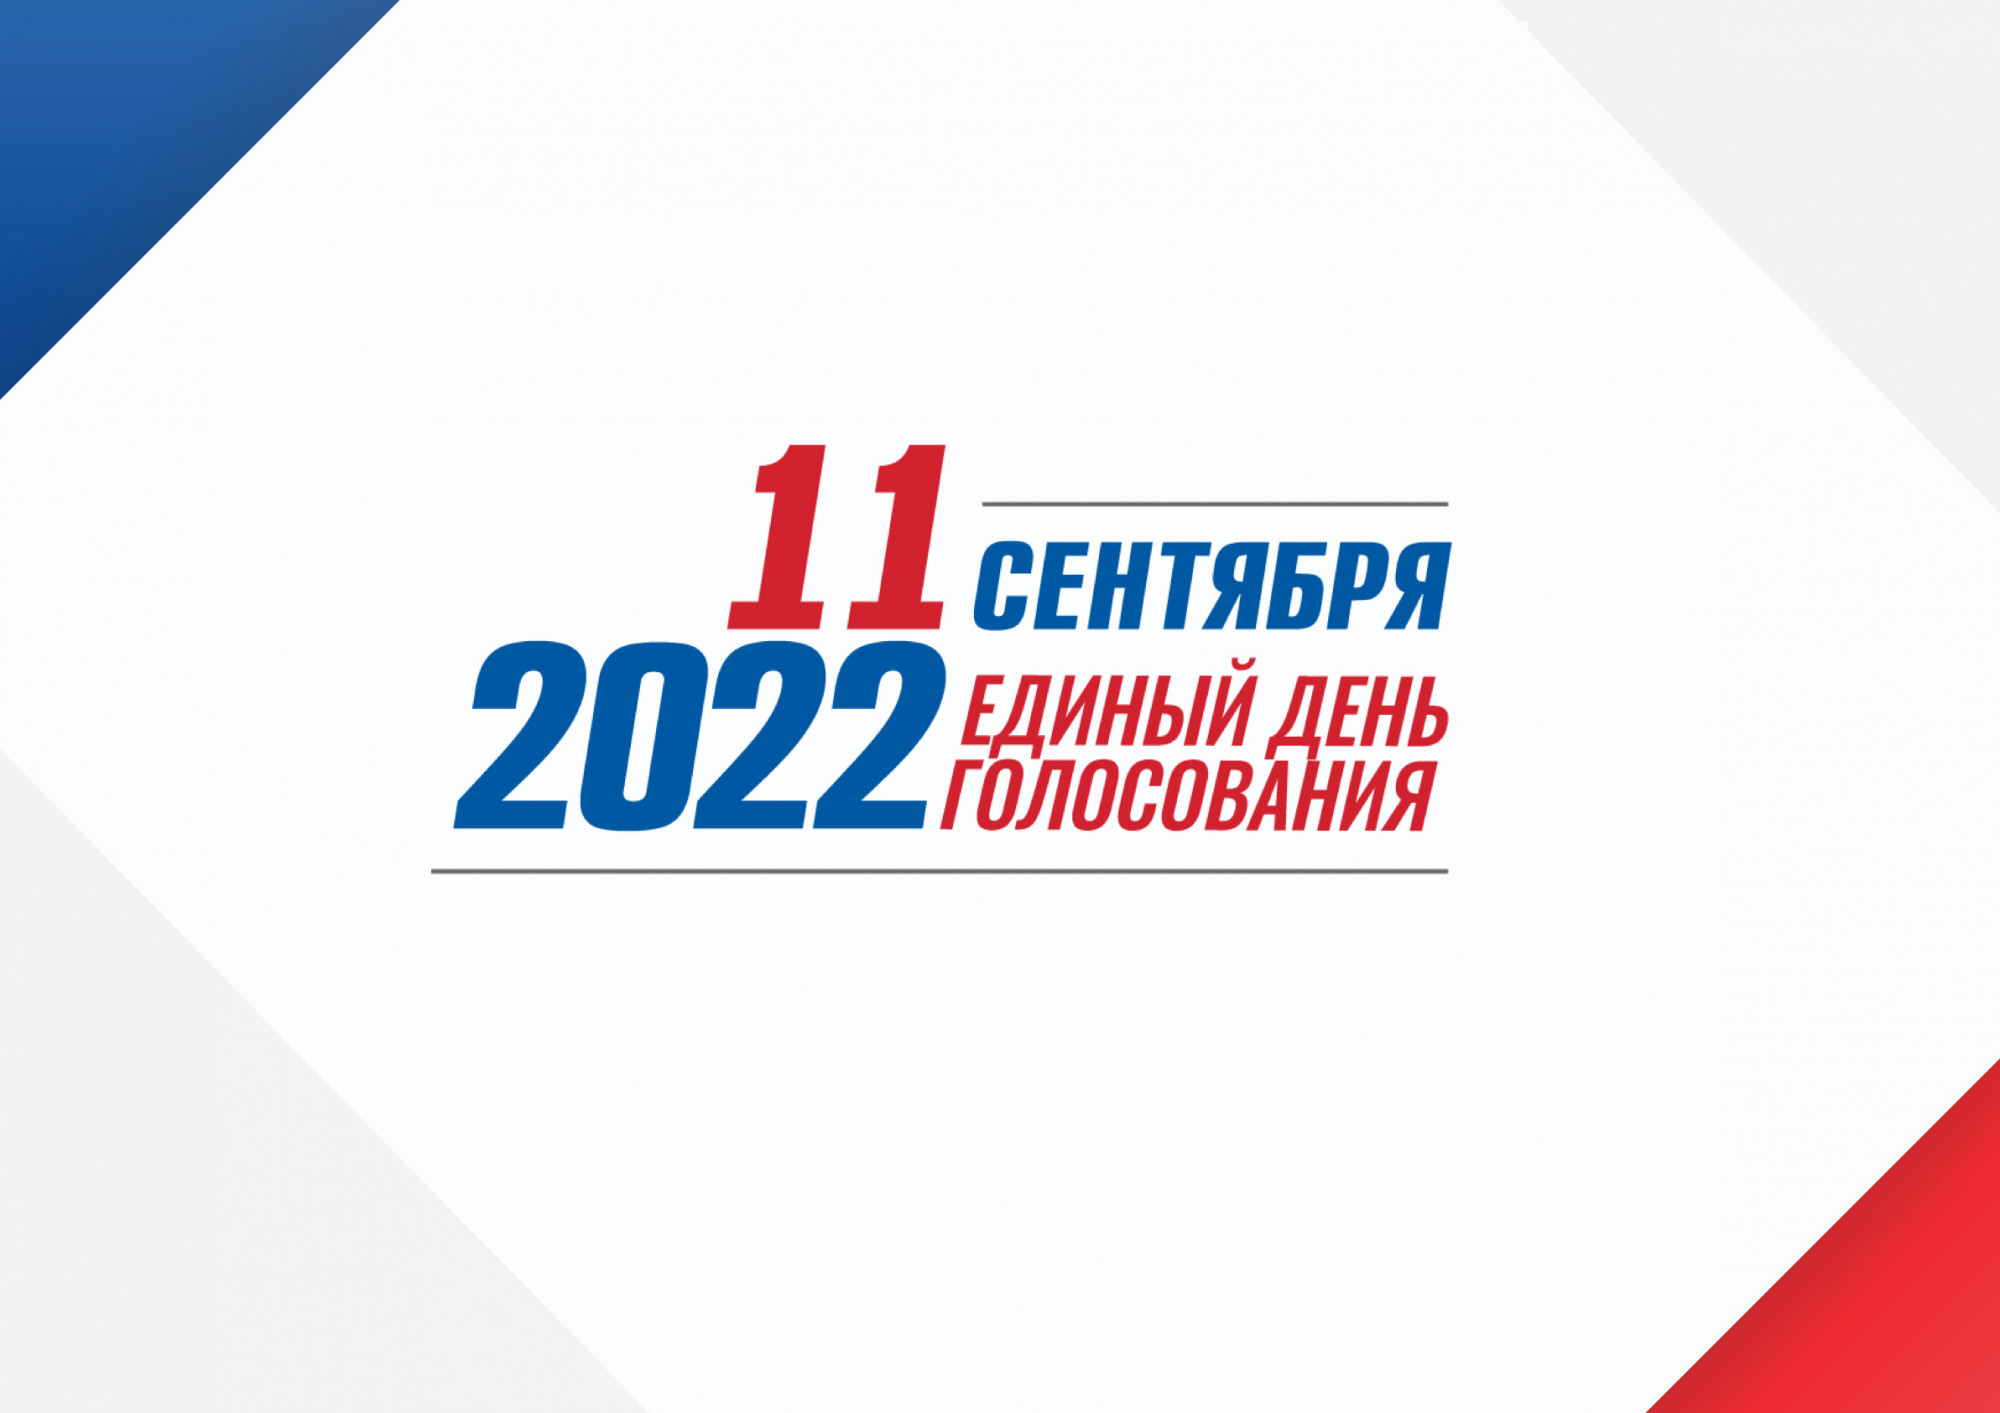 Результаты выборов в свердловской области 2024. Выборы 2022. Единый день голосования 2022. Выборы 2022 единый день голосования. 11 Сентября единый день голосования 2022.